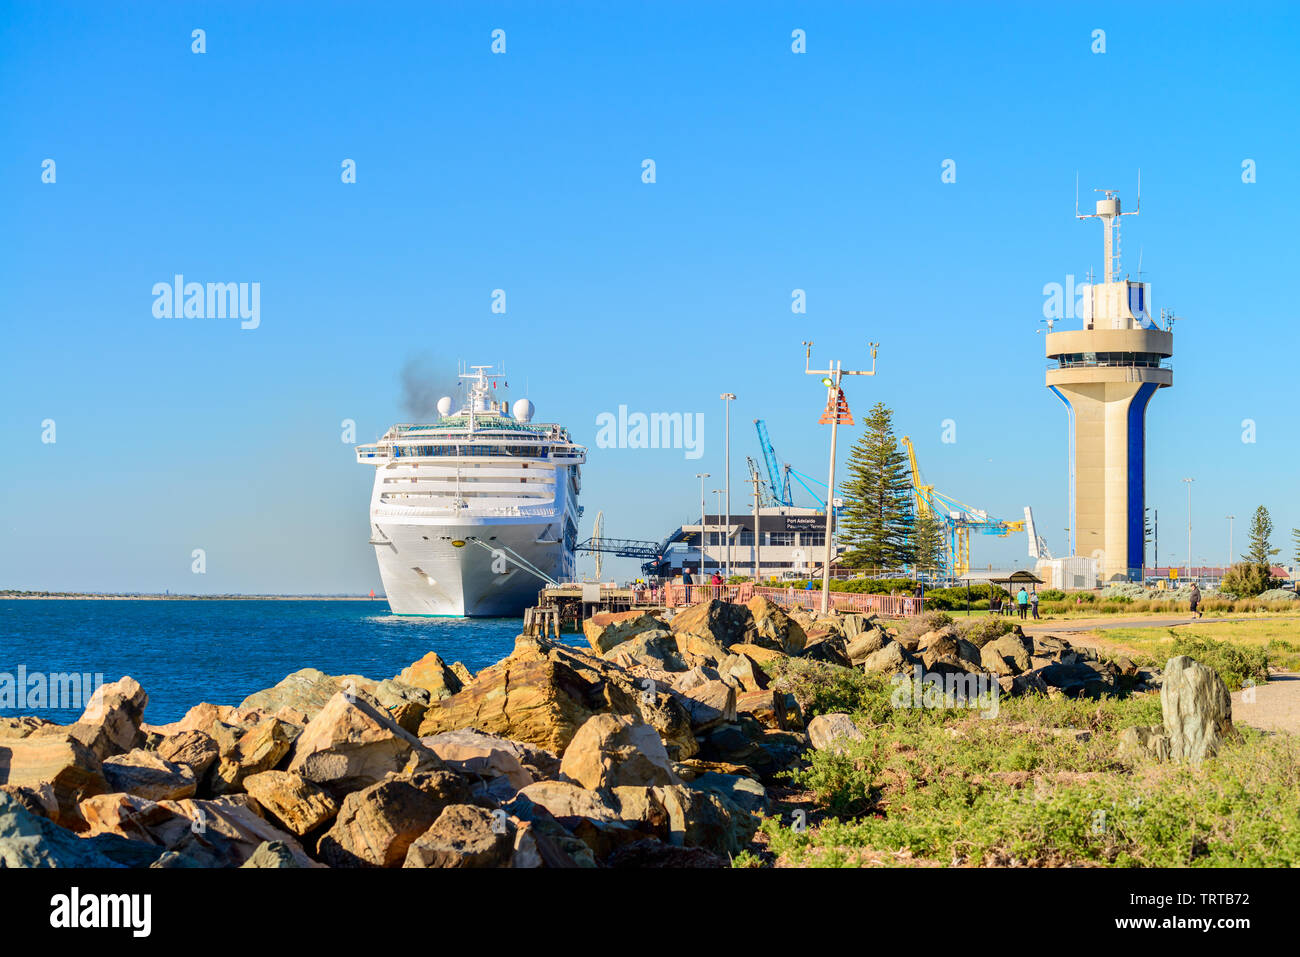 Port Adelaide, South Australia - Oktober 14, 2017: Sun Princess Kreuzfahrt Schiff von äußeren Hafen Passenger Terminal auf den späten afternoo abzuweichen. Stockfoto